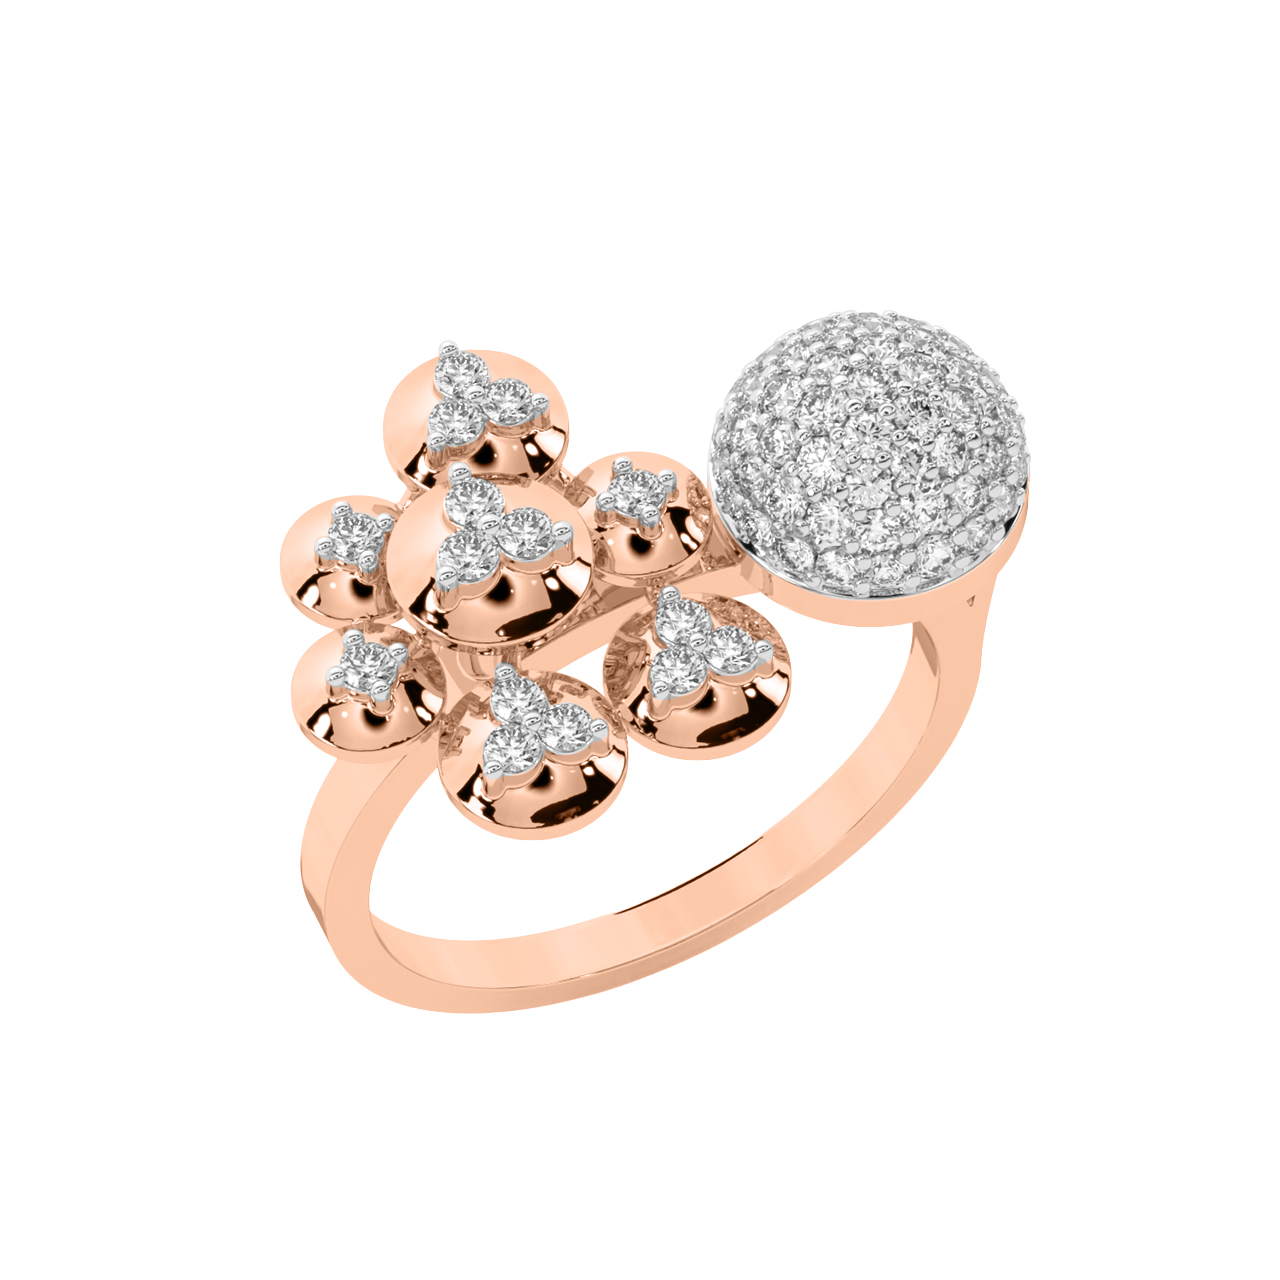 Garine Round Diamond Engagement Ring